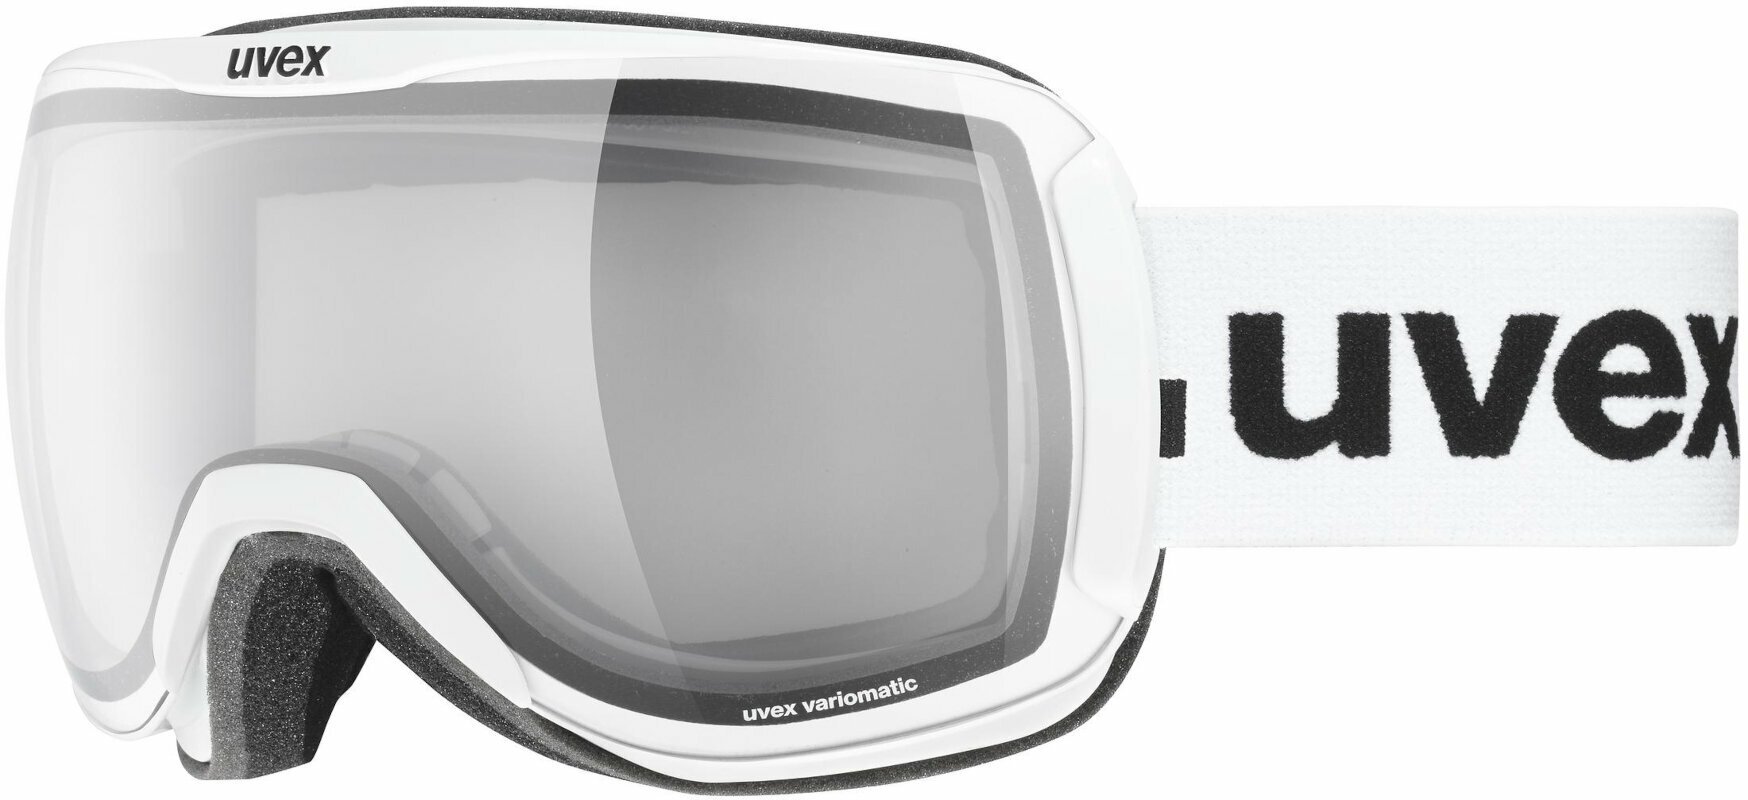 Masques de ski UVEX Downhill 2100 VPX White/Variomatic Polavision Masques de ski